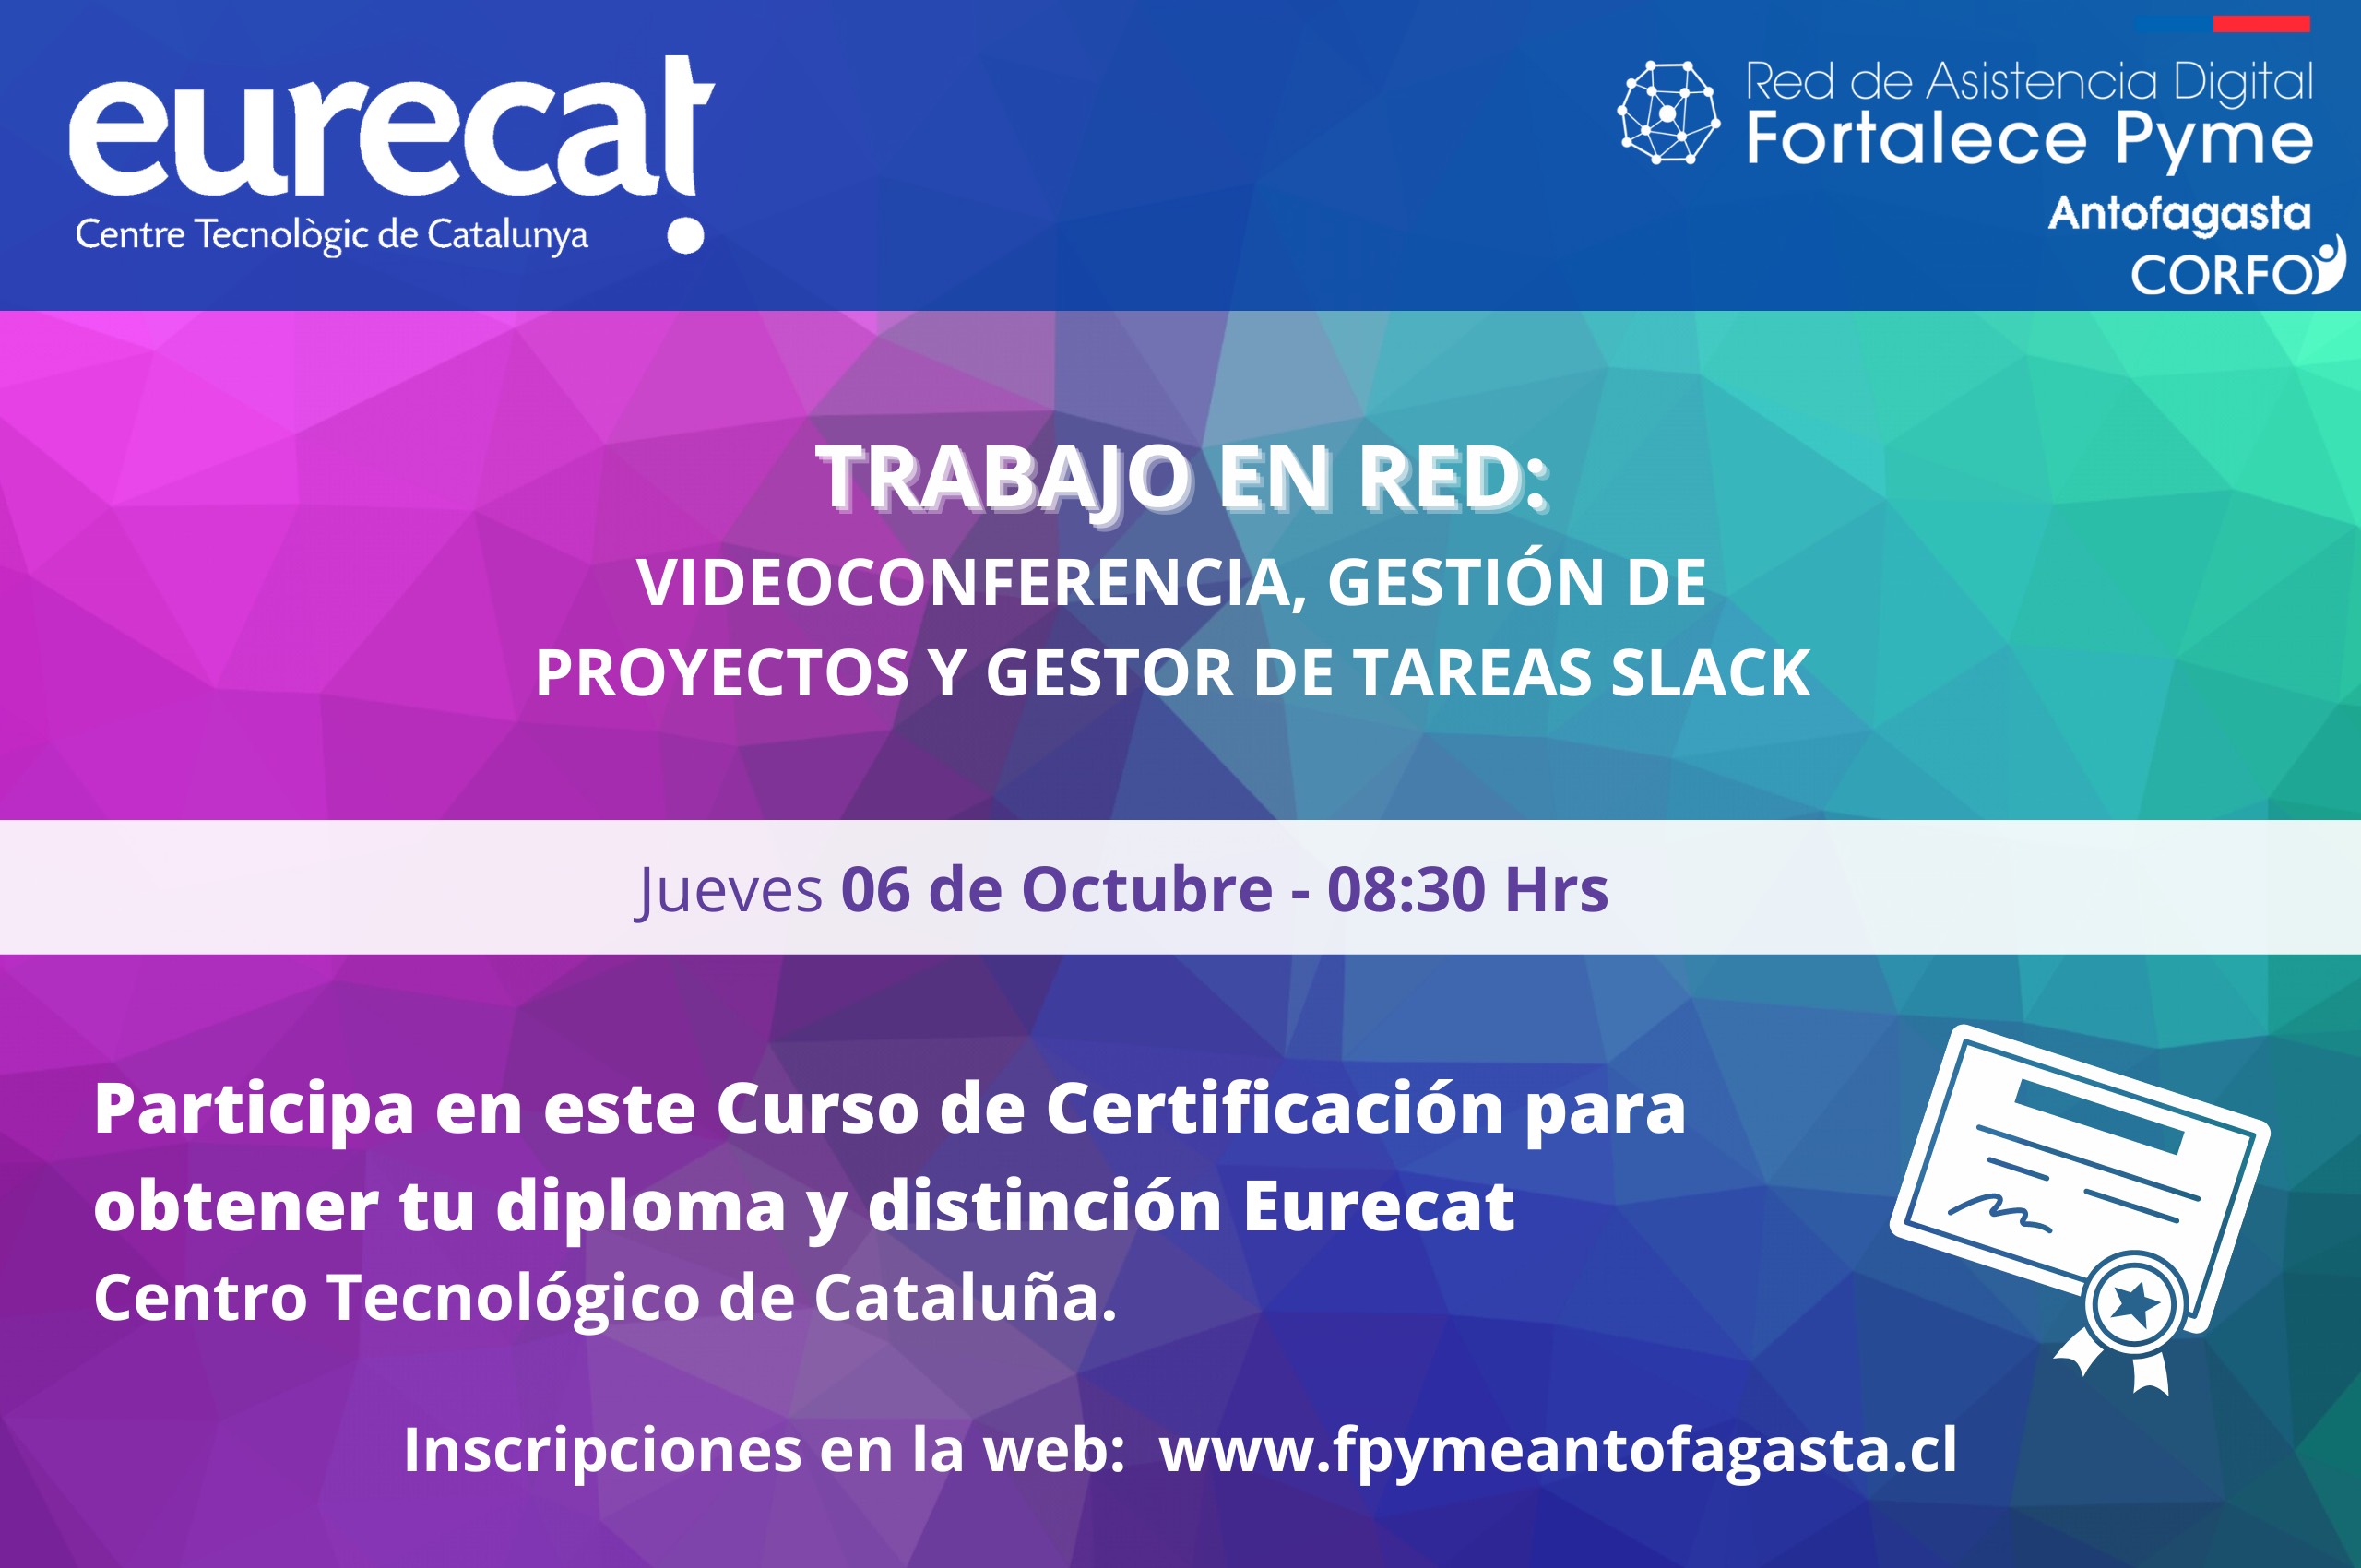 Fortalece Pyme Antofagasta te invita a participar de los Cursos de Digitalización Eurecat del Centro Tecnológico de Cataluña España